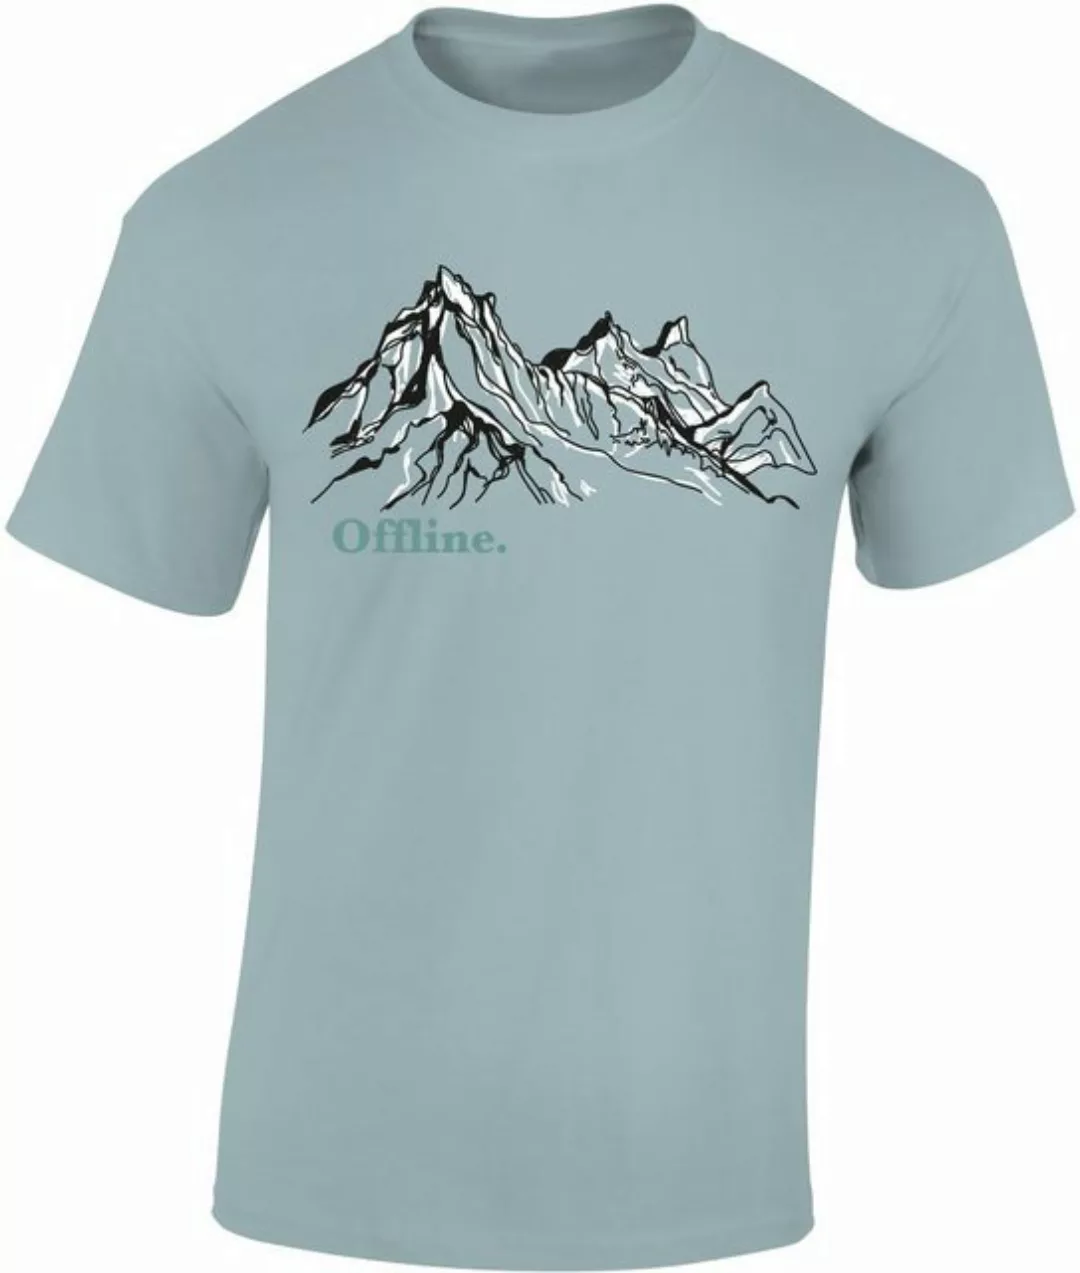 Baddery Print-Shirt Wander Tshirt : Offline - Kletter T-Shirt für Wanderfre günstig online kaufen